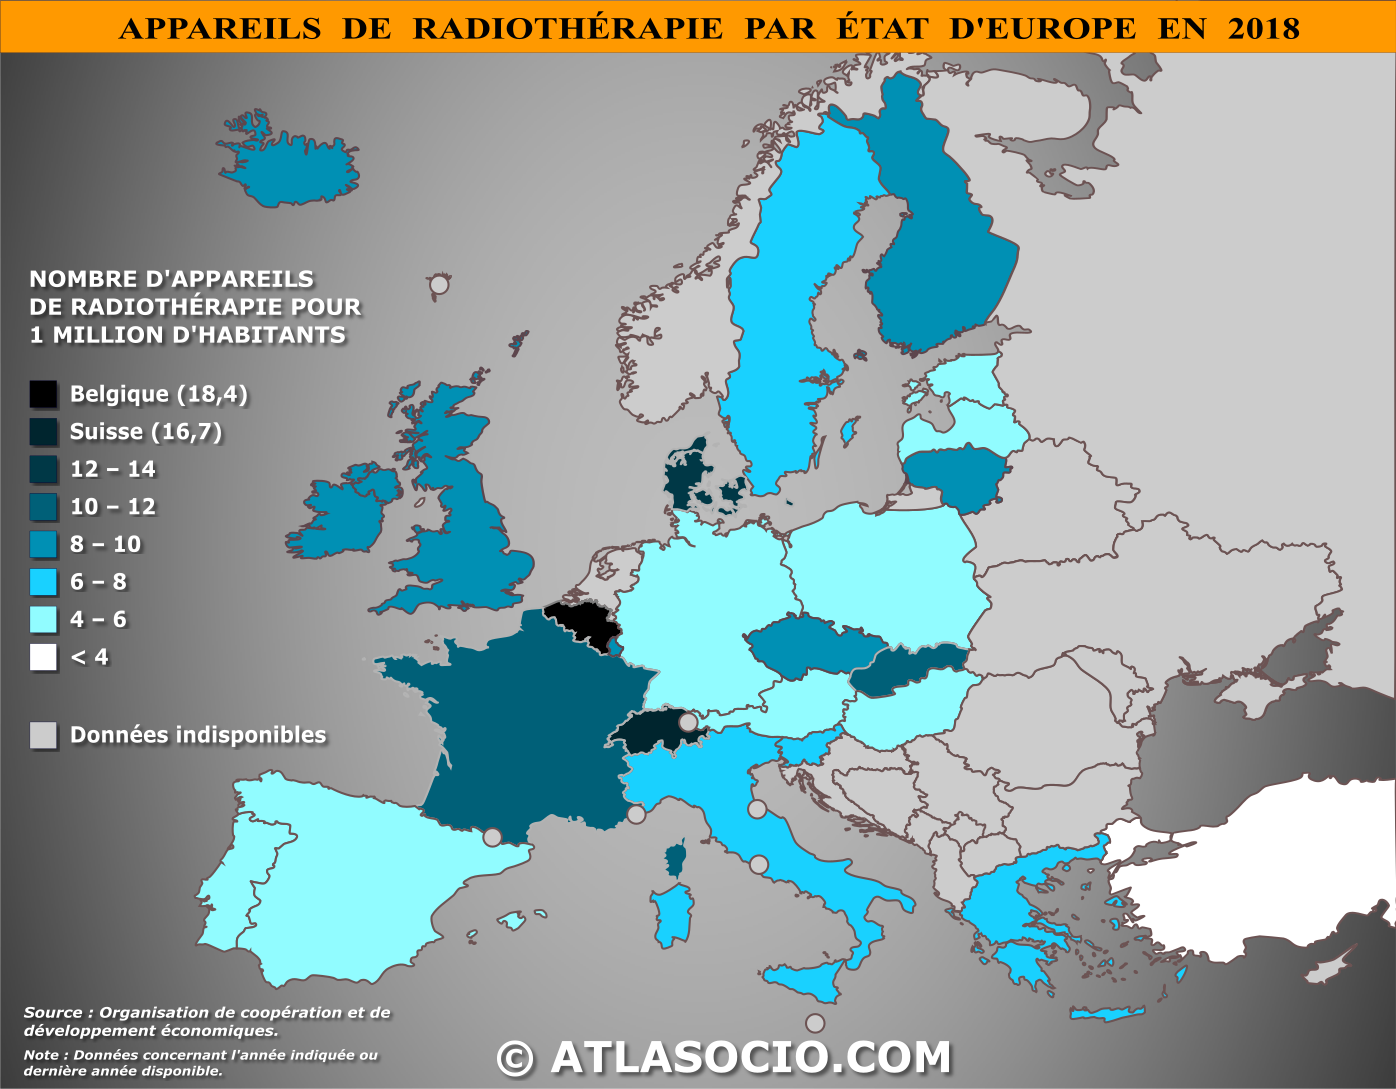 Carte d'Europe relative au nombre d'appareils de radiothérapie (1M d'hab.) par État en 2018